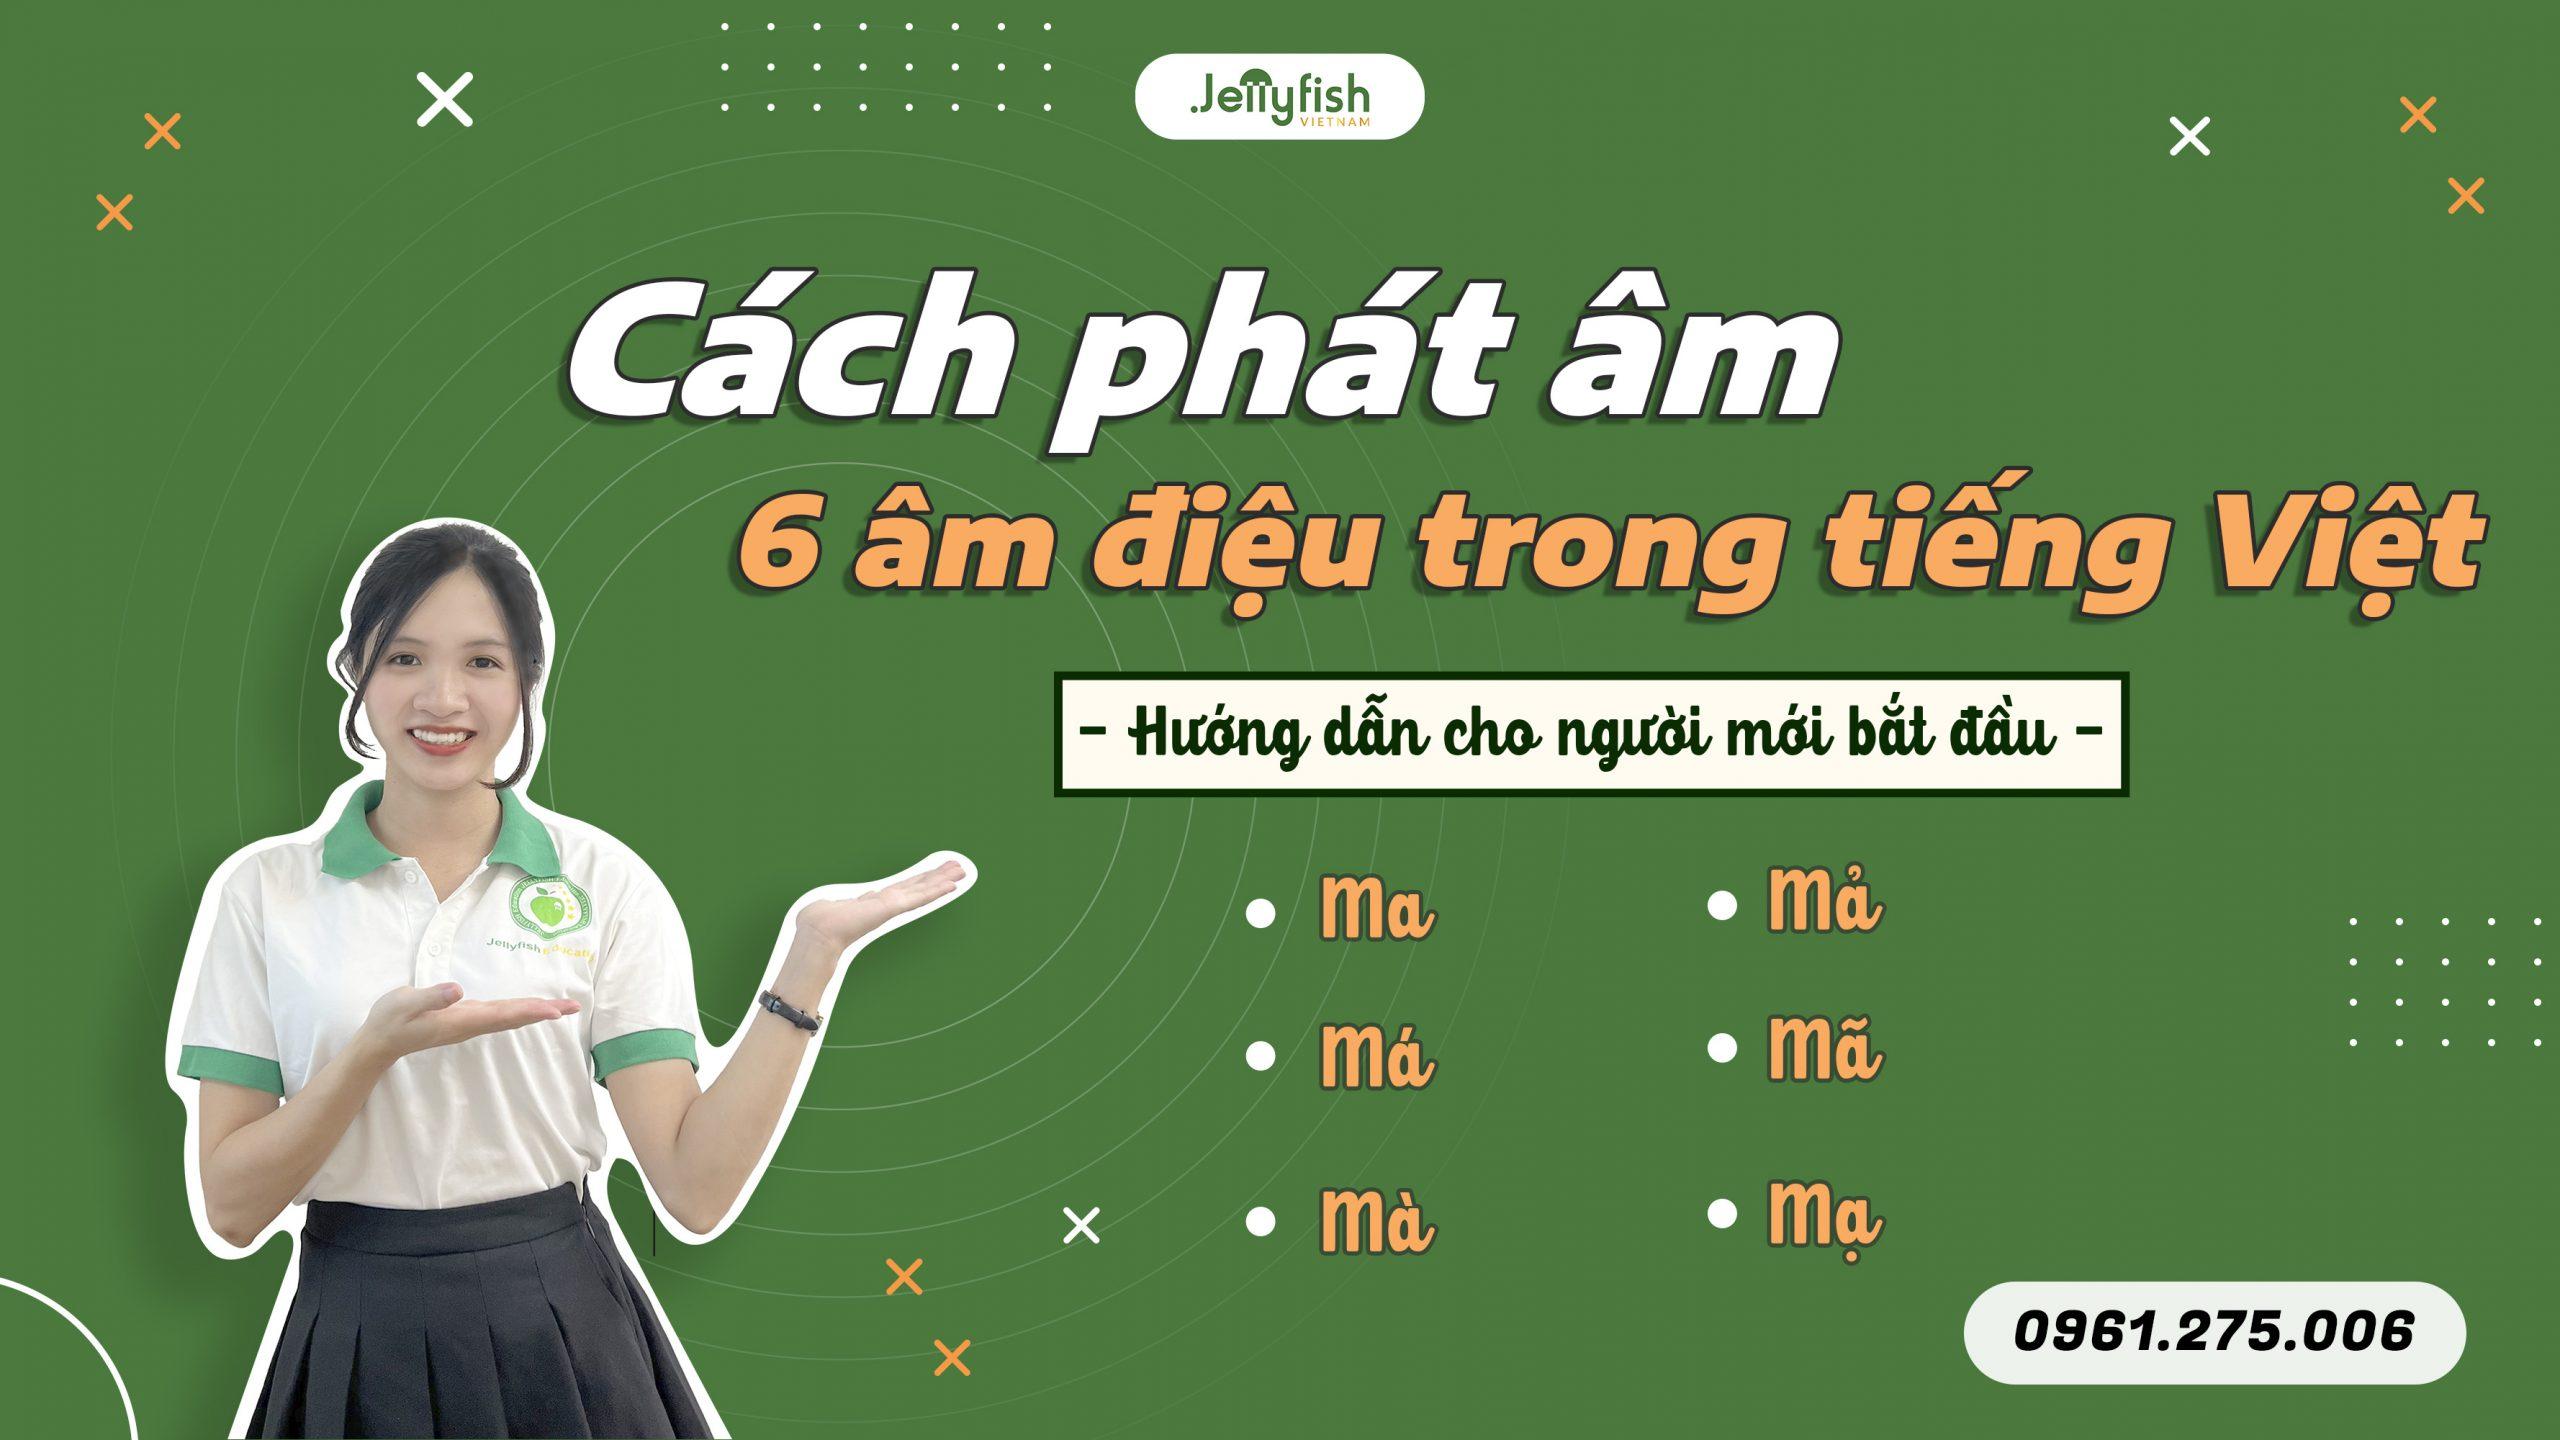 6 thanh điệu trong tiếng Việt